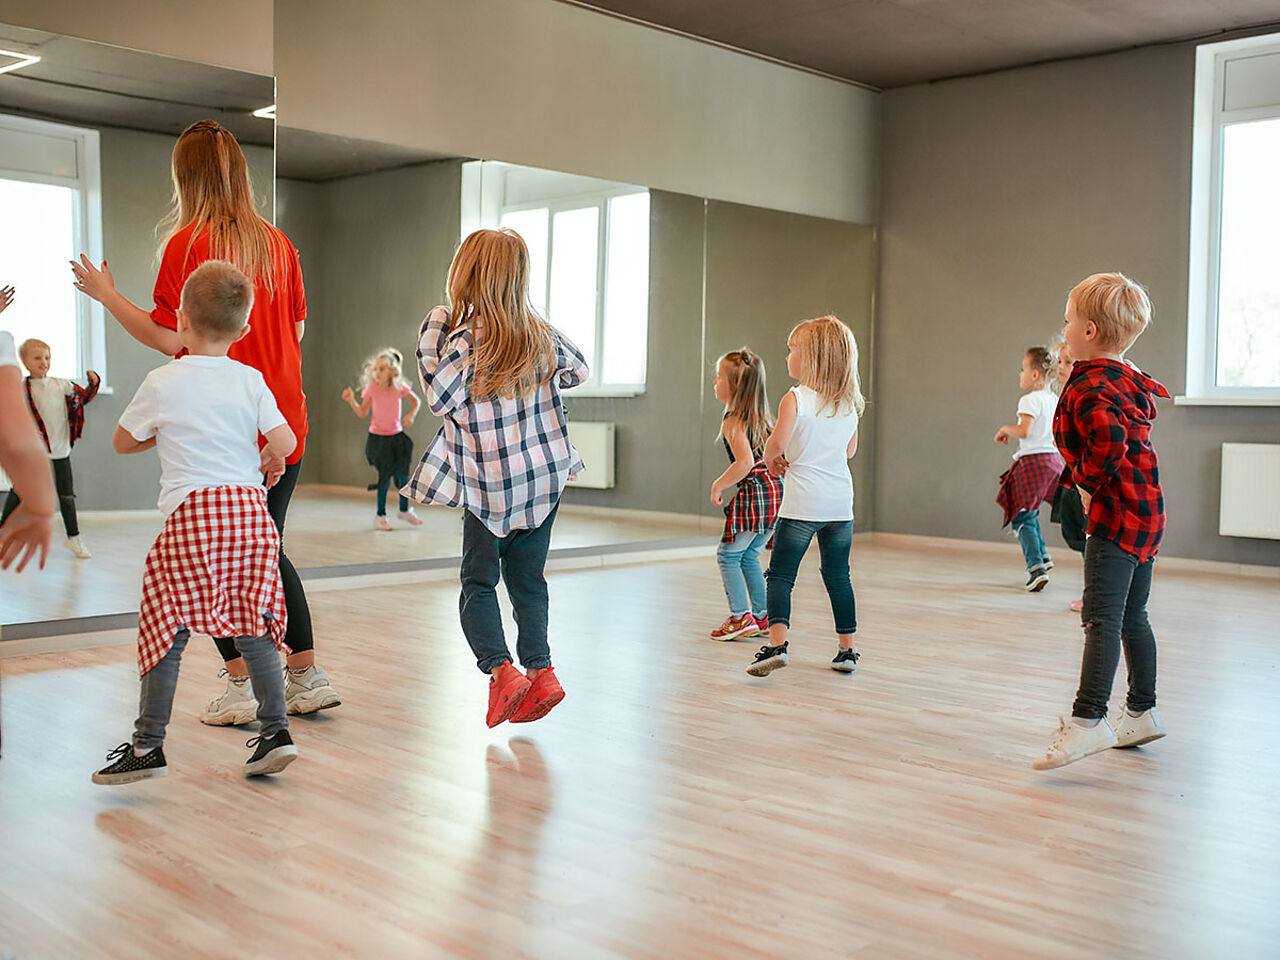 講師の後ろでダンスの練習をしている小さい子どもたちの画像